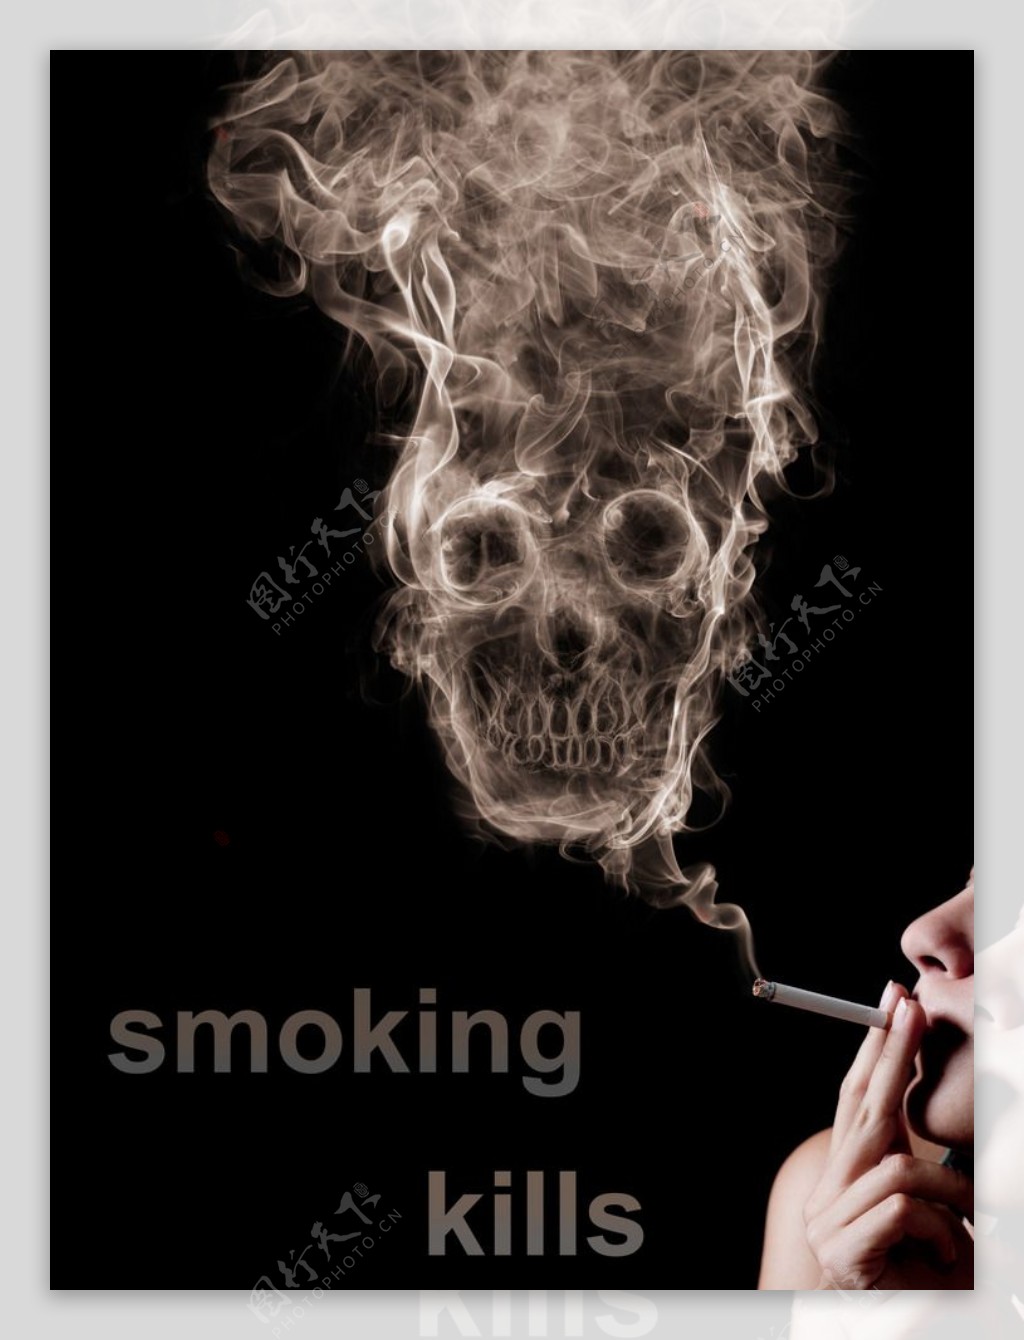 世界无烟日拒绝抽烟拒绝二手烟骷髅头香烟深色主题海报素材模板下载 - 图巨人